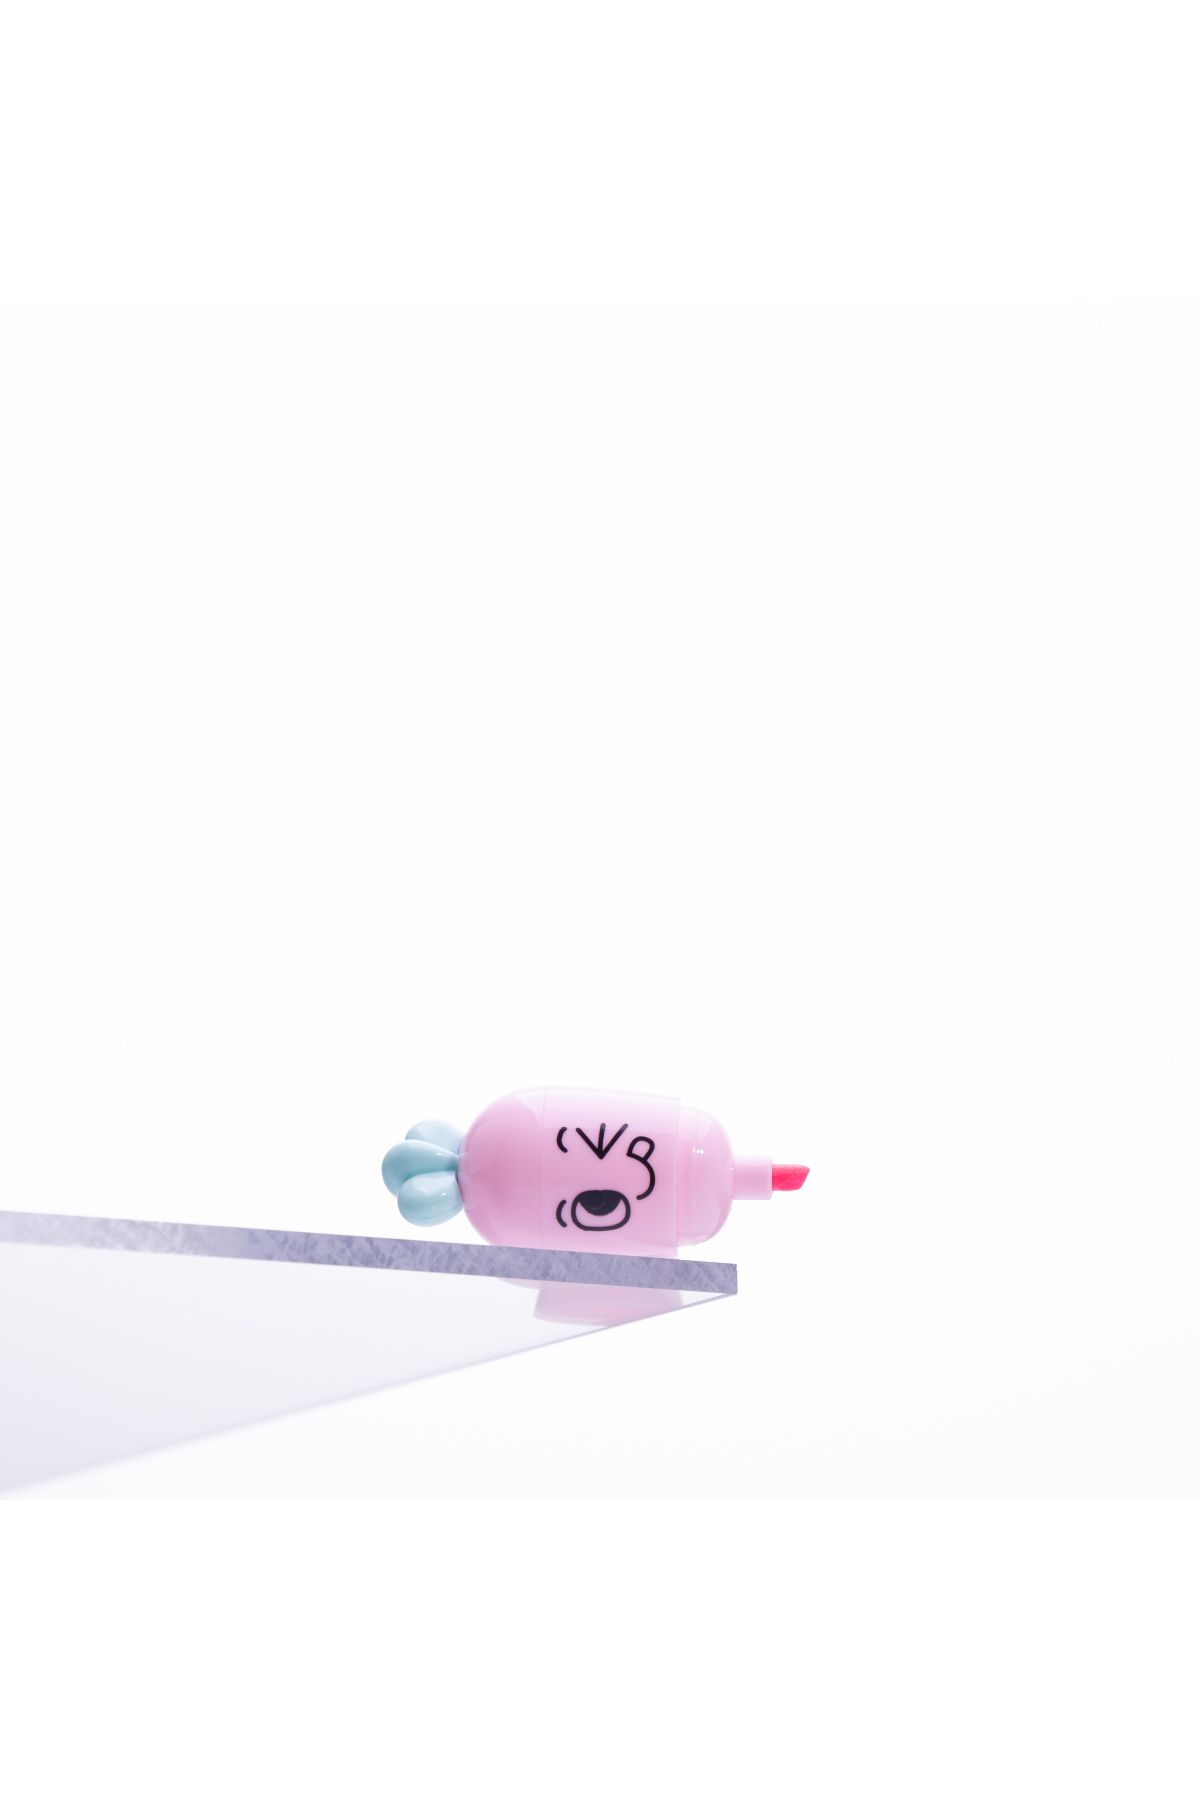 Bimotif Emoji desenli mini havuç, fosforlu kalem, Pembe 1 adet